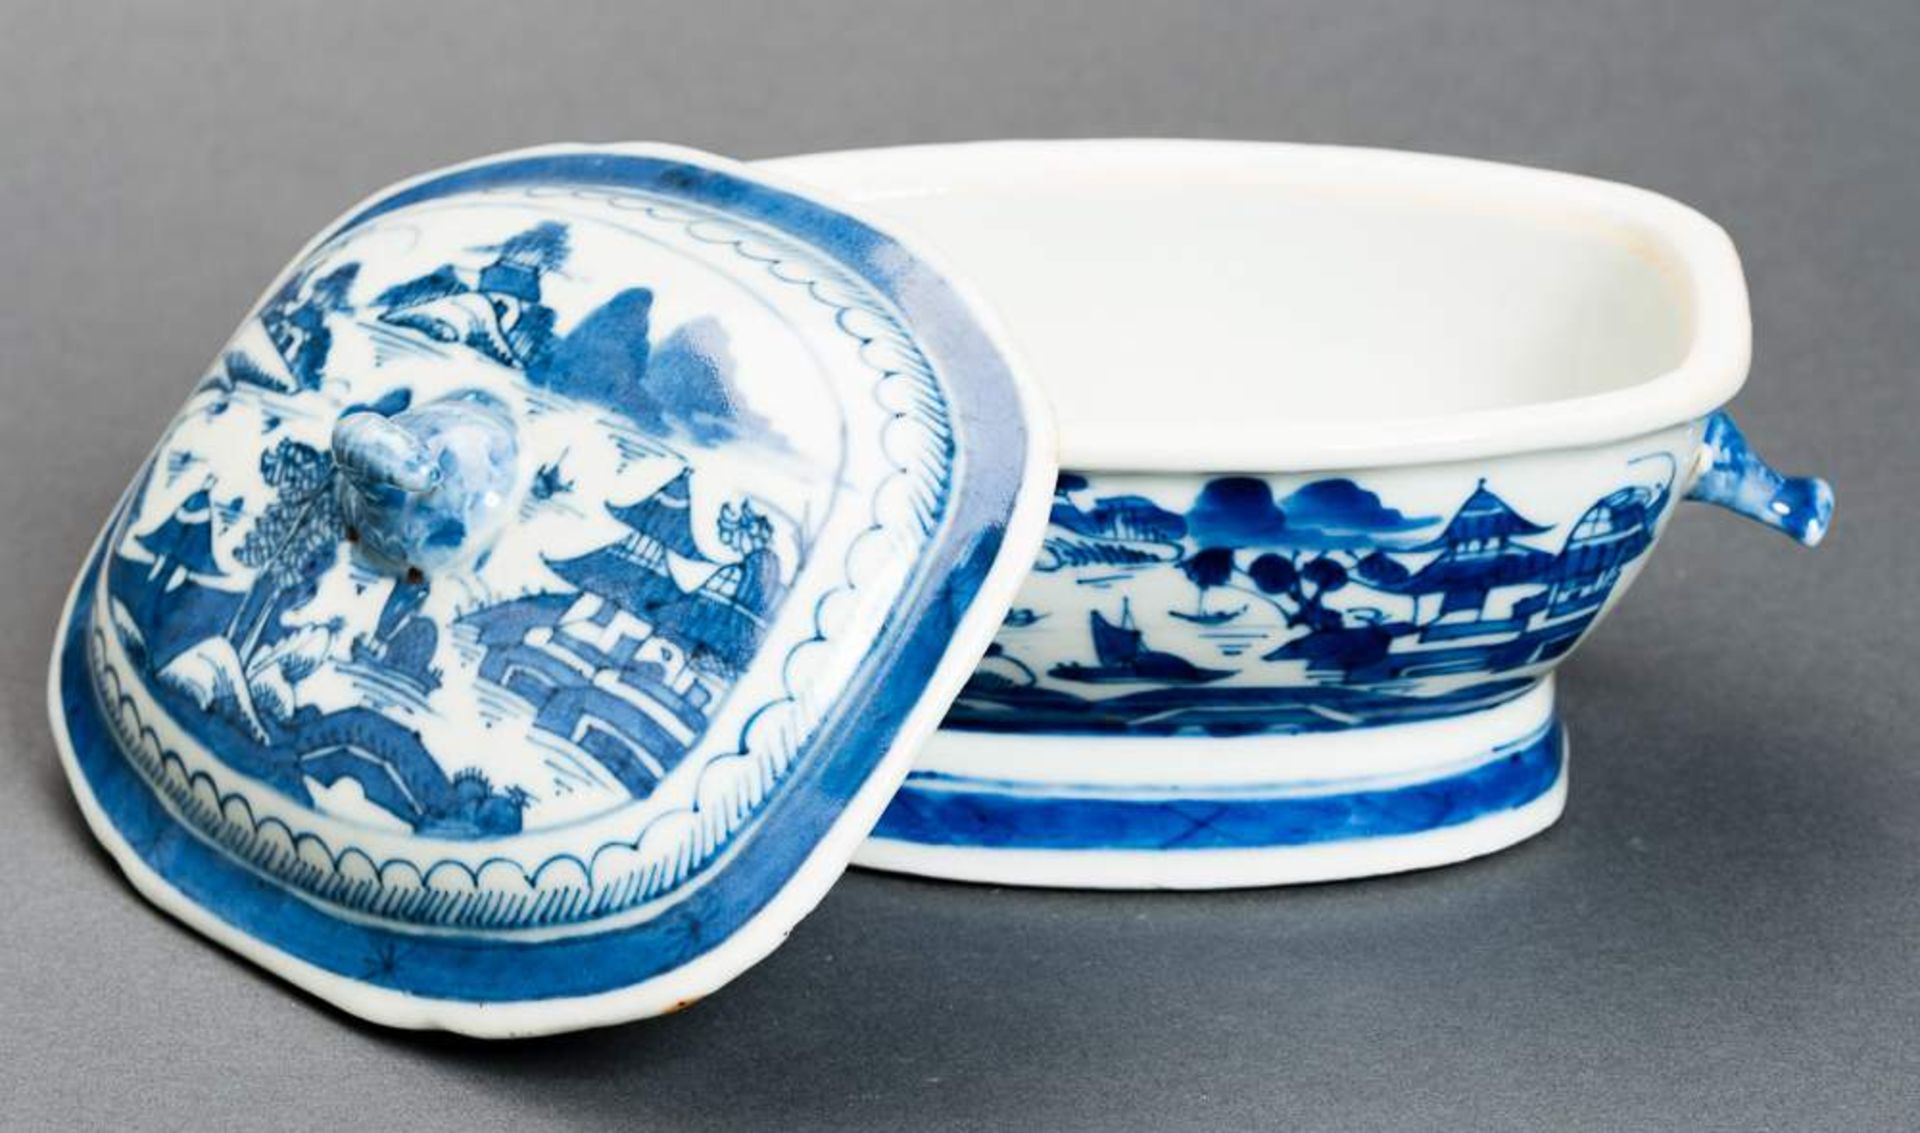 DECKELSCHALE Blauweiß-Porzellan. China, Qing-Dynastie, 19. Jh. Diese sehr ansprechende oval- - Image 6 of 11